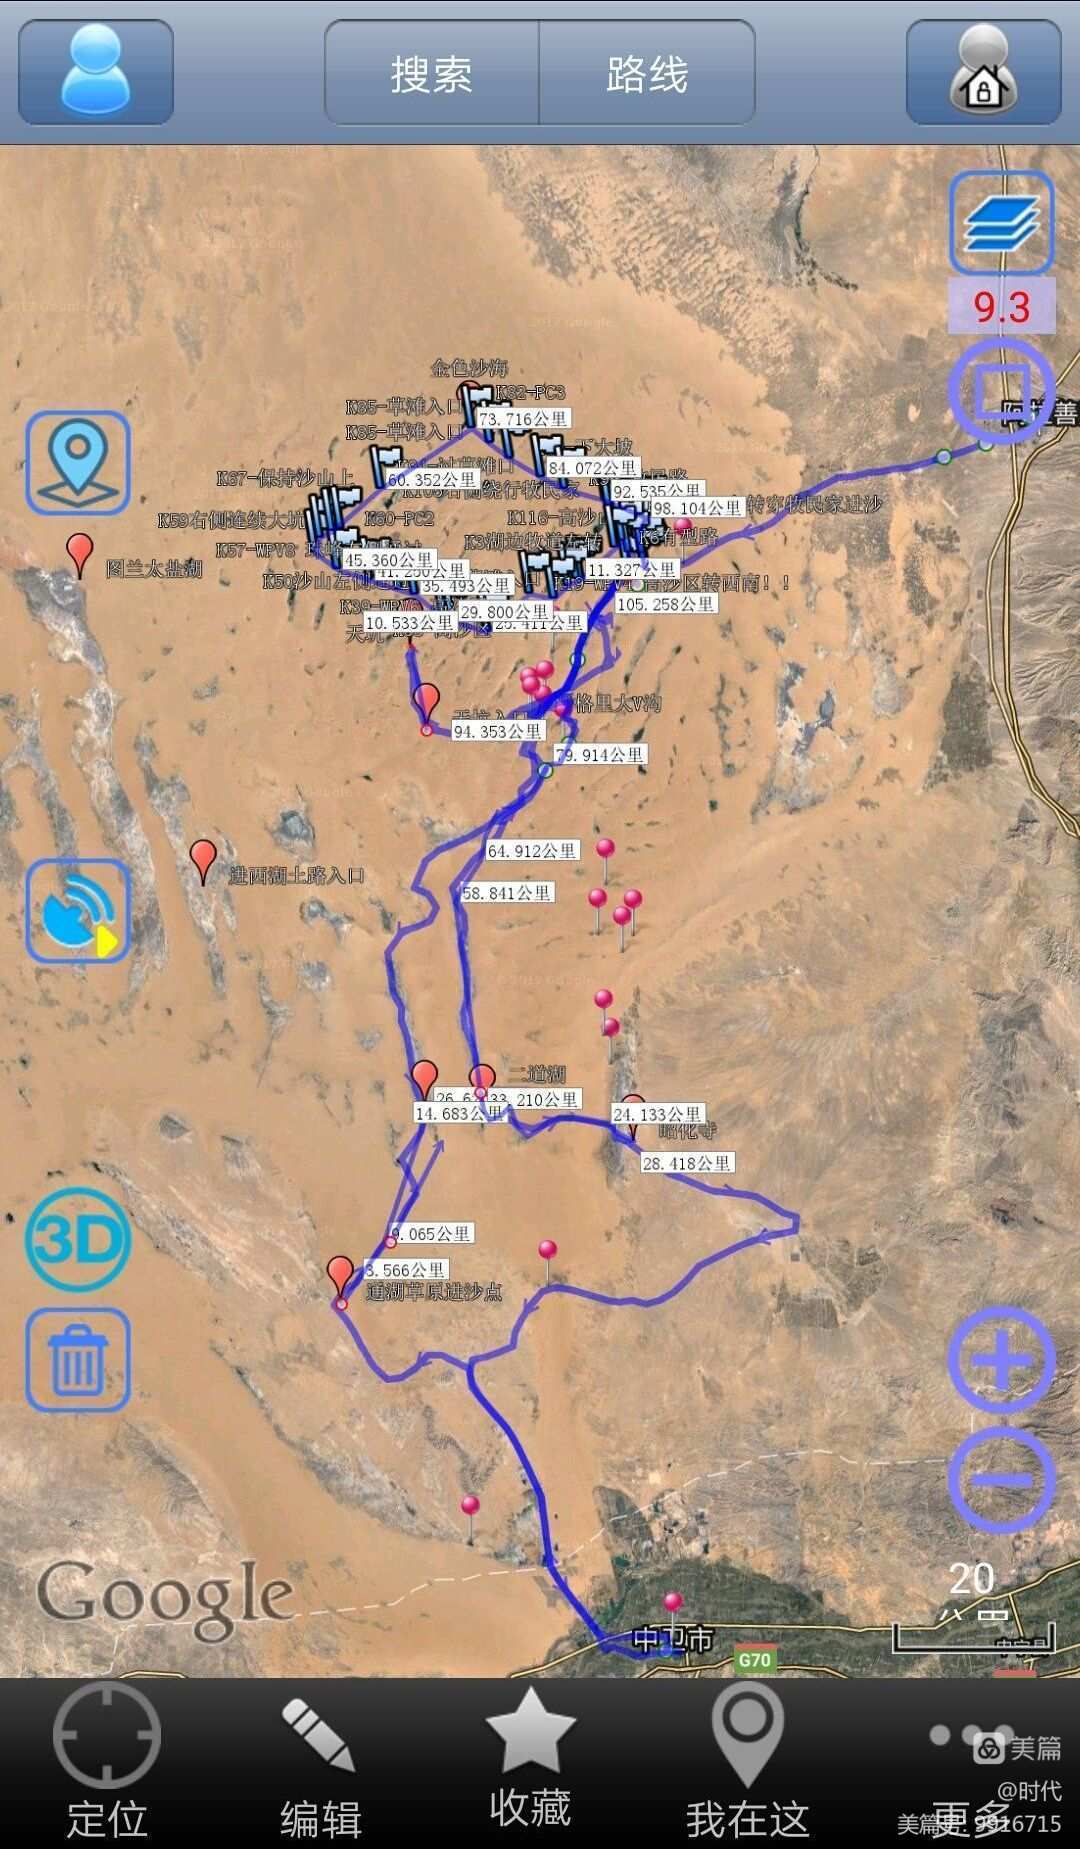 沙漠地图有用吗_沙漠地图玩手机游戏用什么软件_如何用手机玩沙漠地图游戏